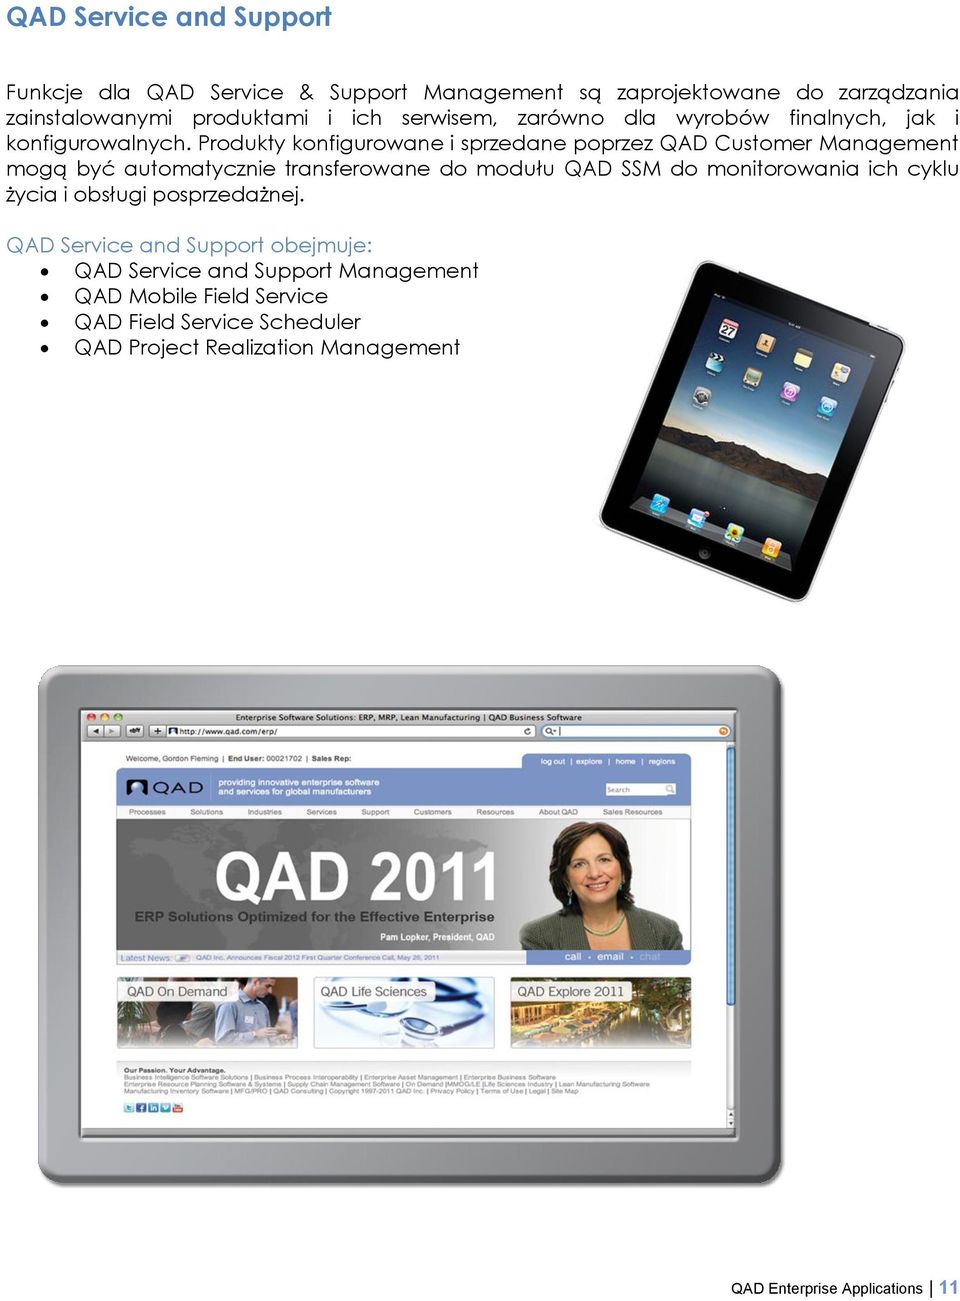 Produkty konfigurowane i sprzedane poprzez QAD Customer Management mogą być automatycznie transferowane do modułu QAD SSM do monitorowania